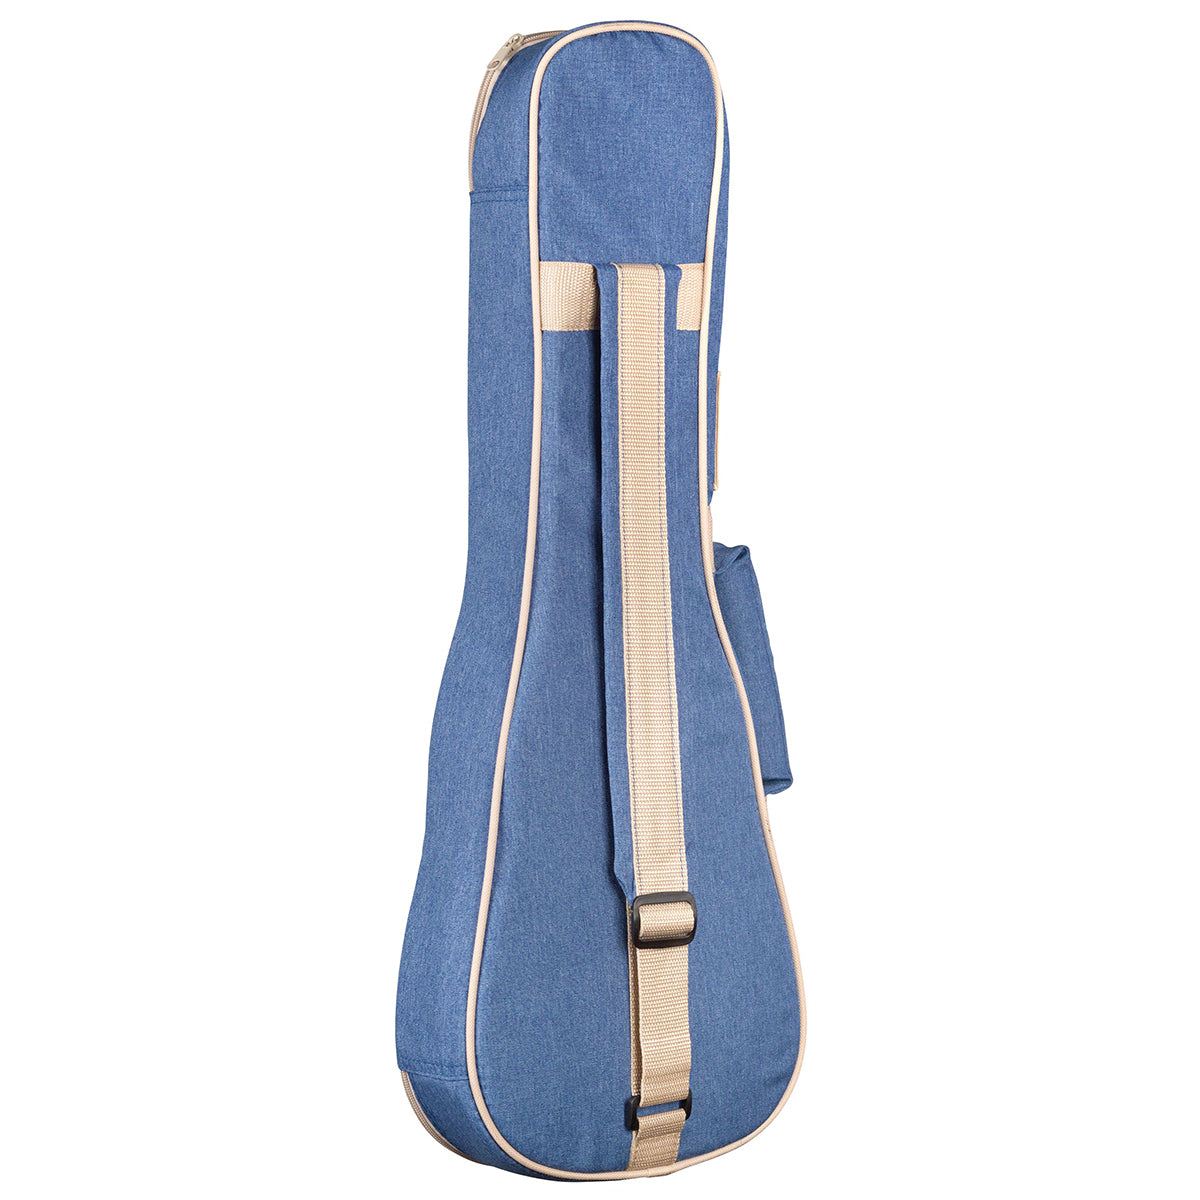 Cordoba 15CM Matiz Classic Blue Concert Ukulele with Color-Matching Nylon Gig Bag